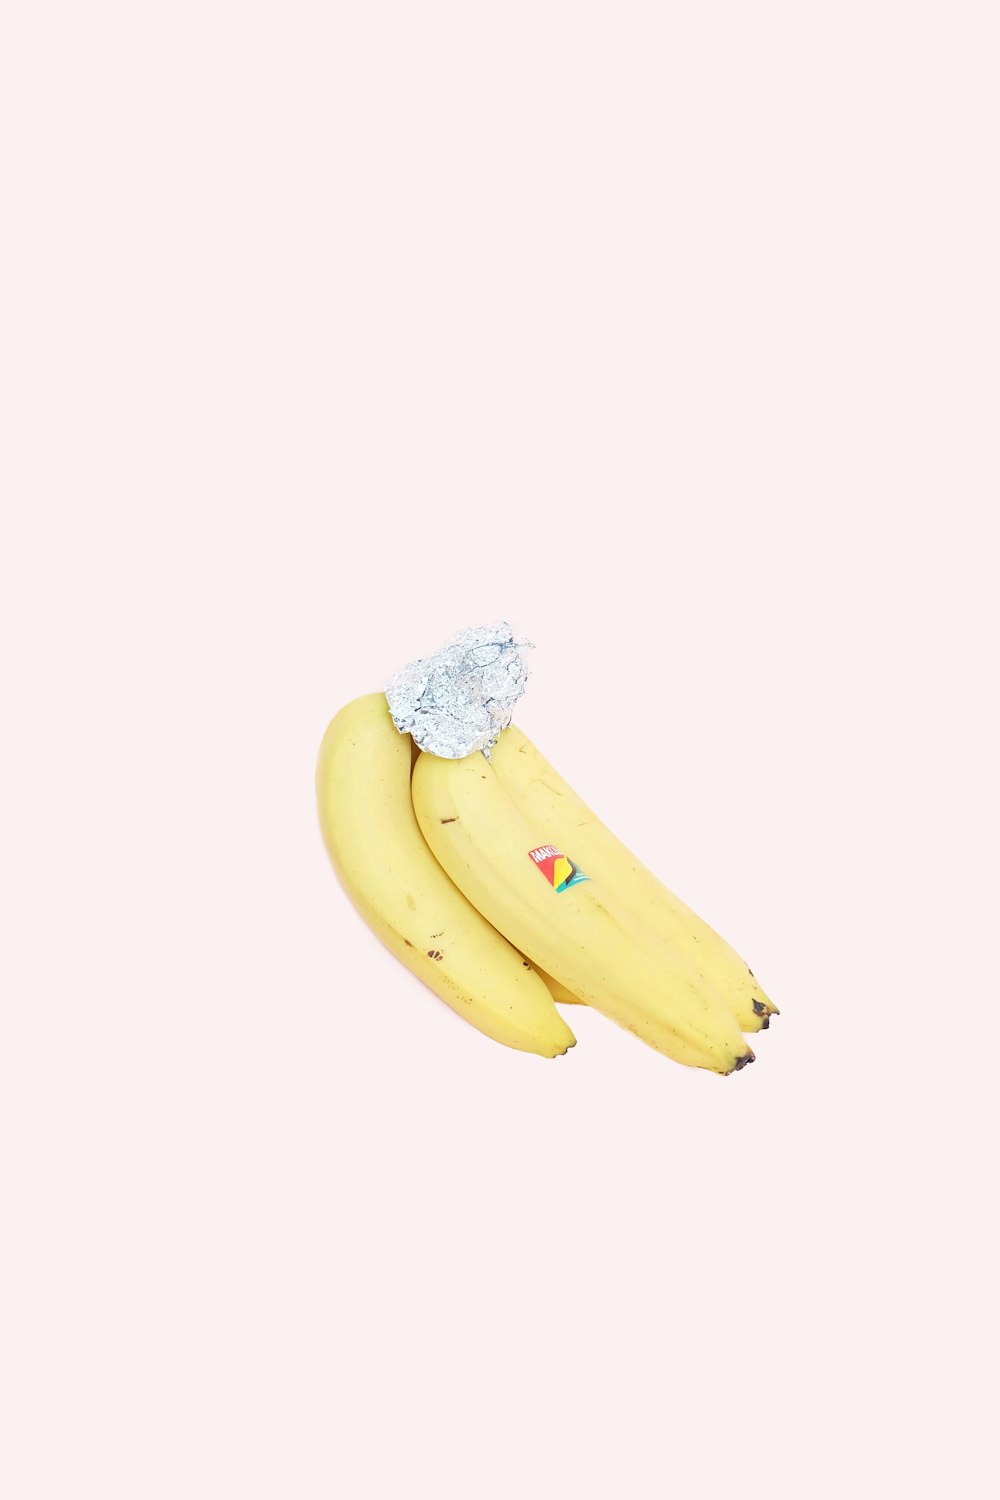 manojo de plátano